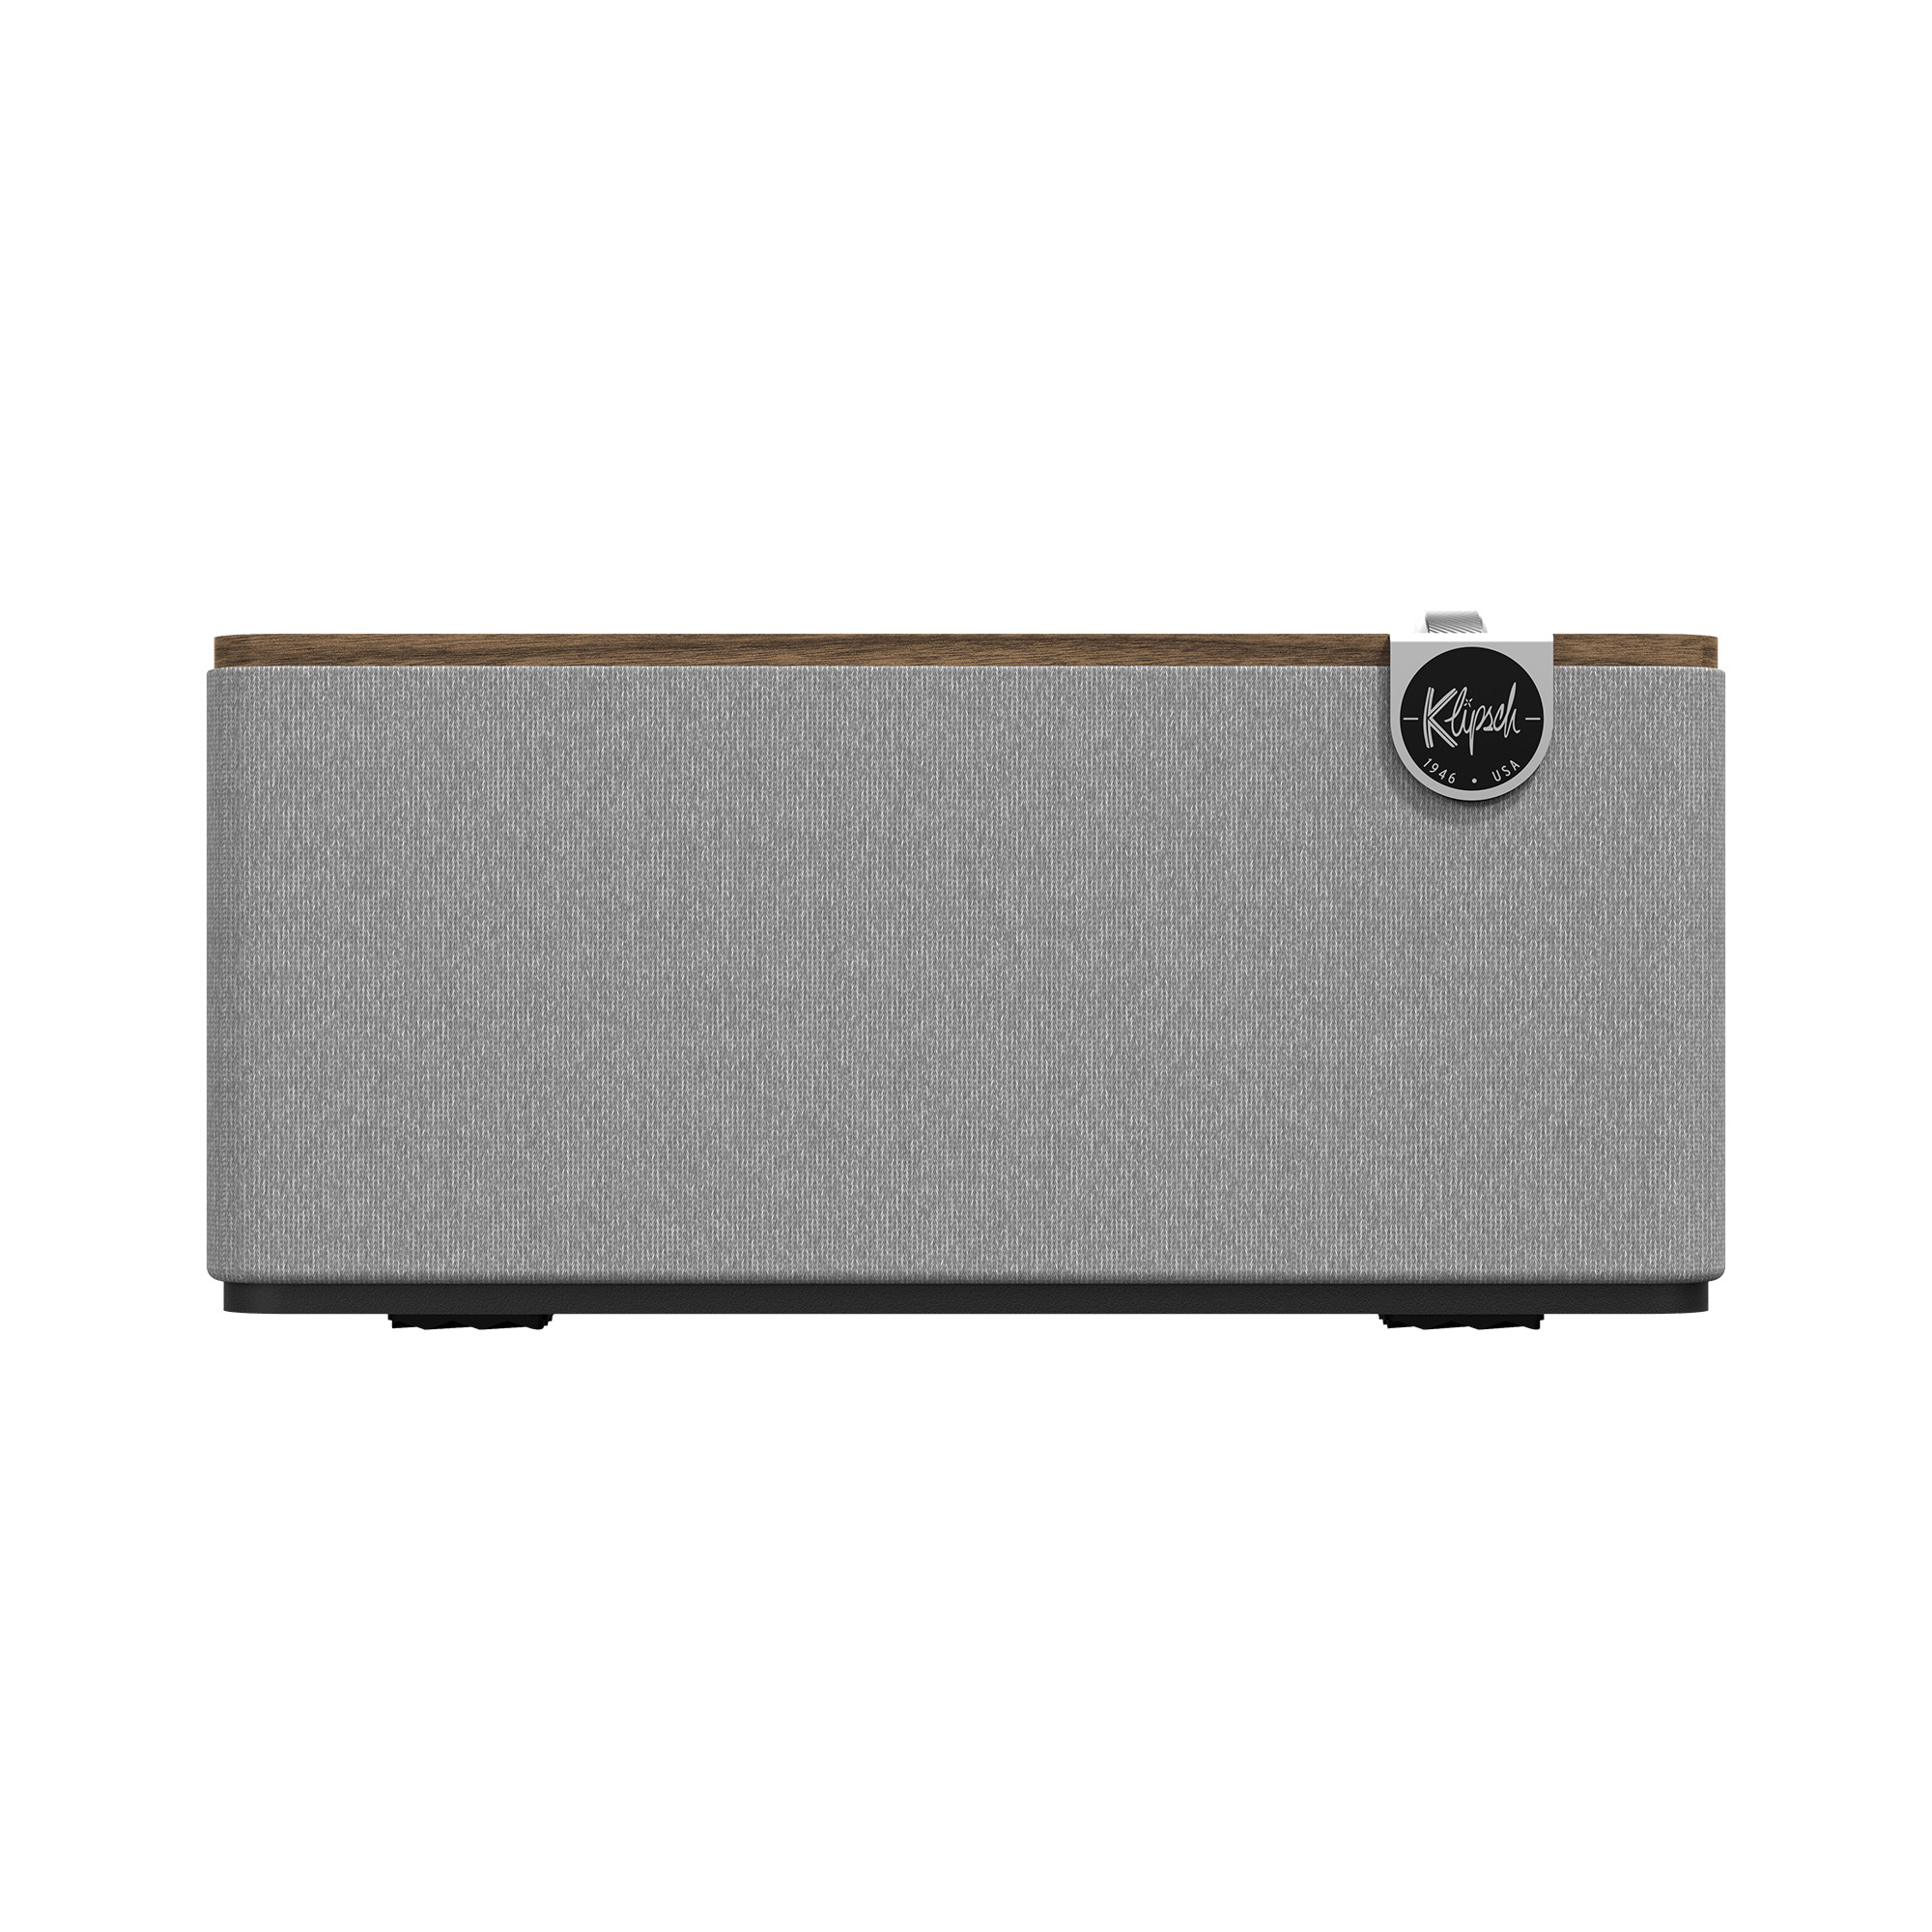 Klipsch-The-One-Plus-Bluetooth-Lautsprecher-3-Generation-Walnuss